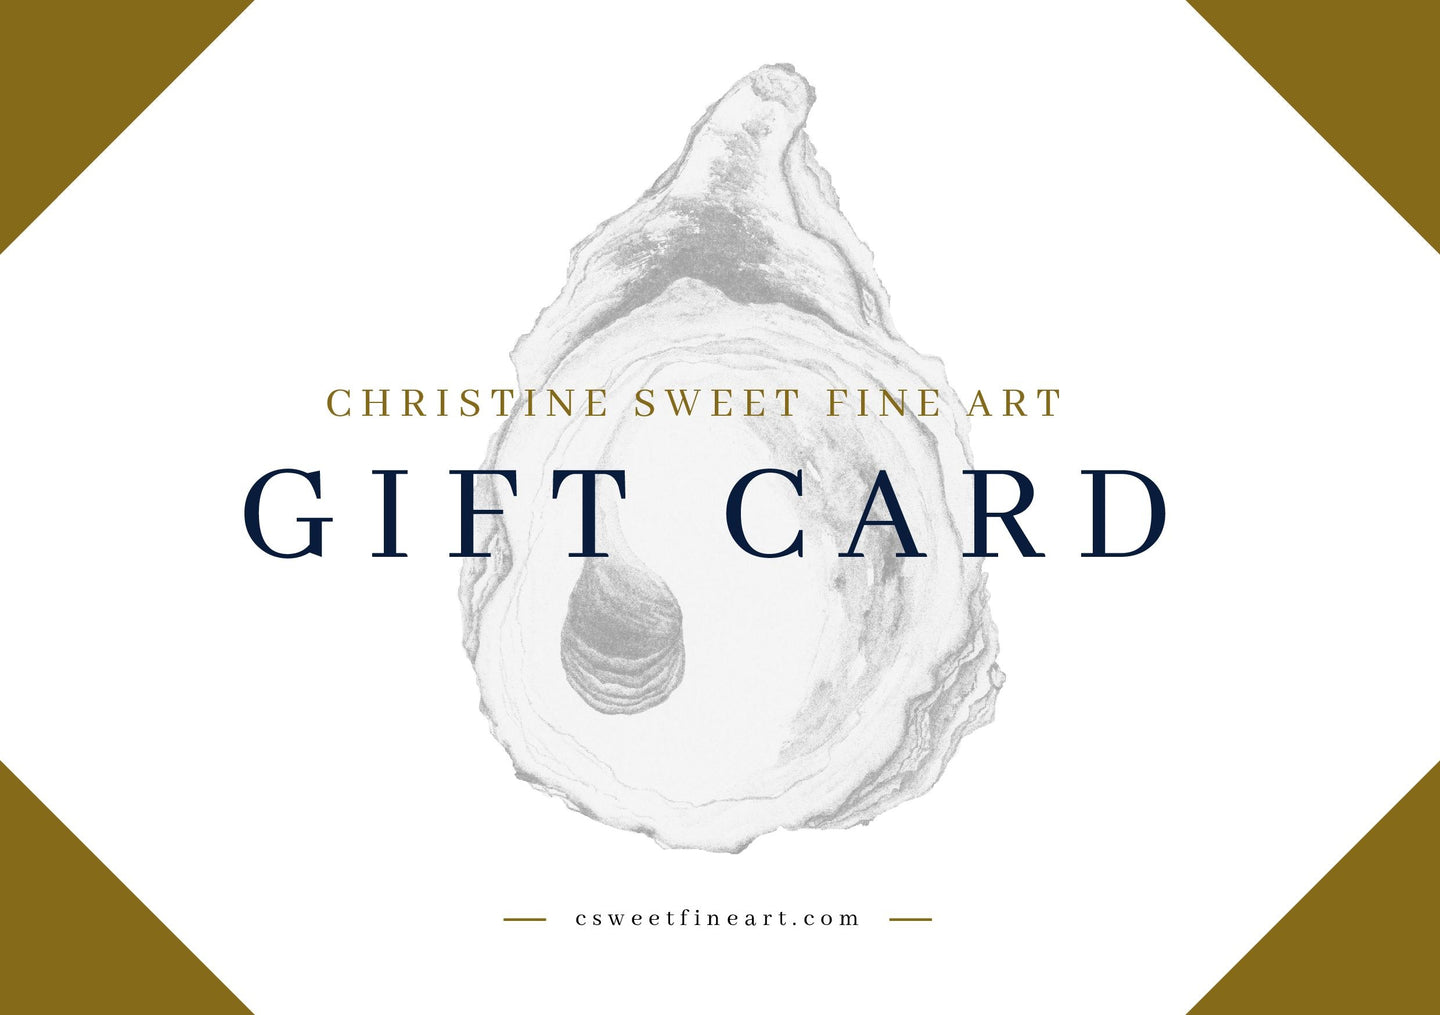 Christine Sweet Fine Art GIFT CARD